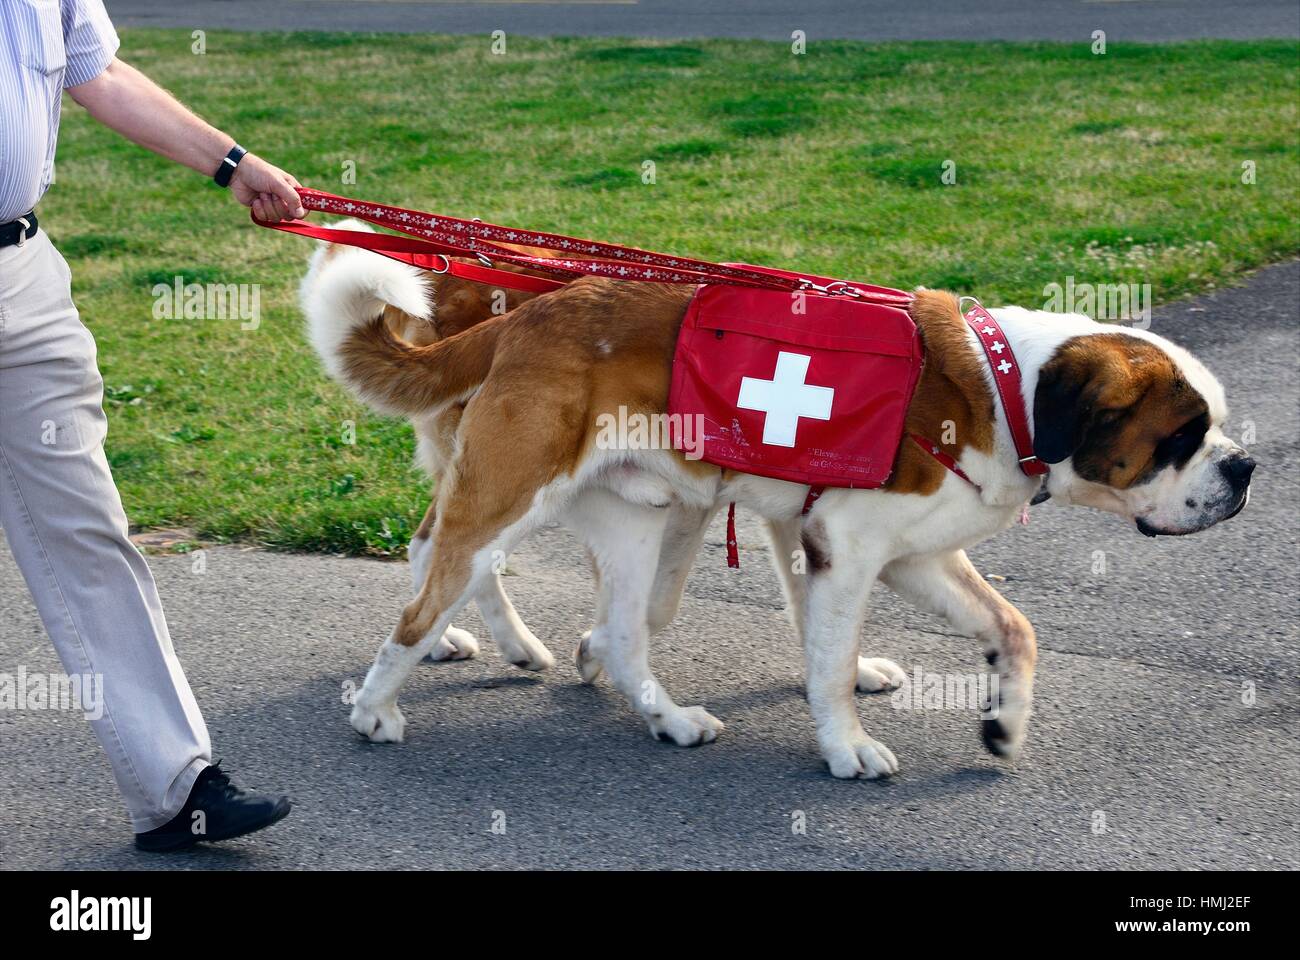 Zwei Bernhardiner Hunde bei einem Spaziergang, Genf, Schweiz  Stockfotografie - Alamy